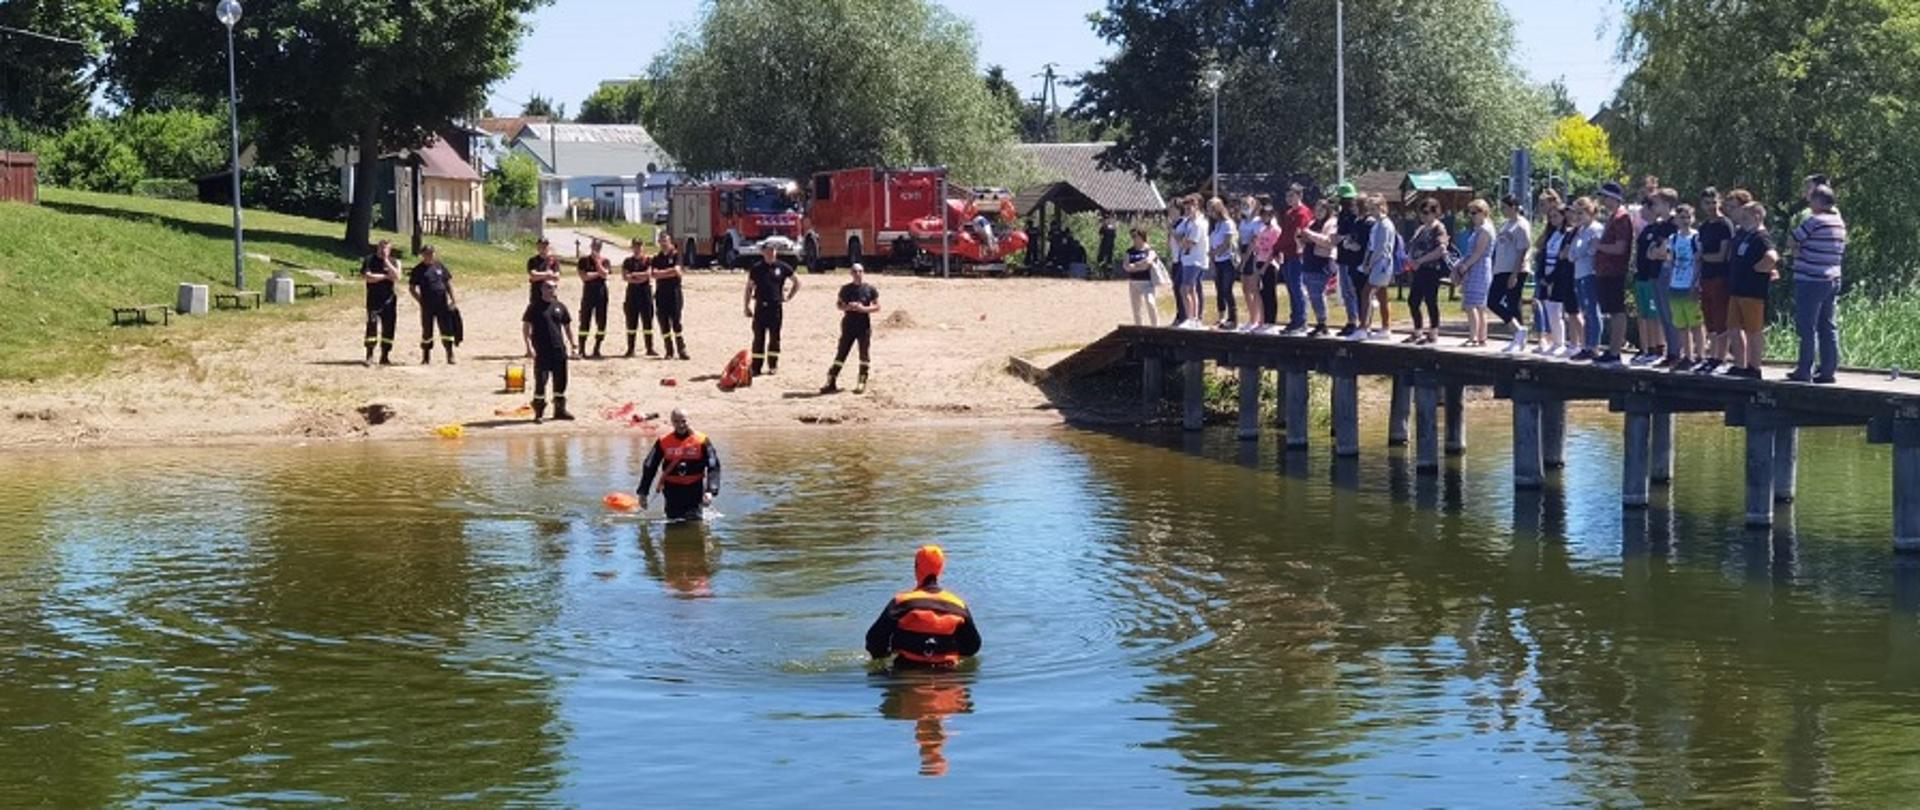 Ludzie stojący na pomoście nad jeziorem. Na brzegu plaży stoją strażacy. W wodzie dwóch strażaków w ubraniach wypornościowych.